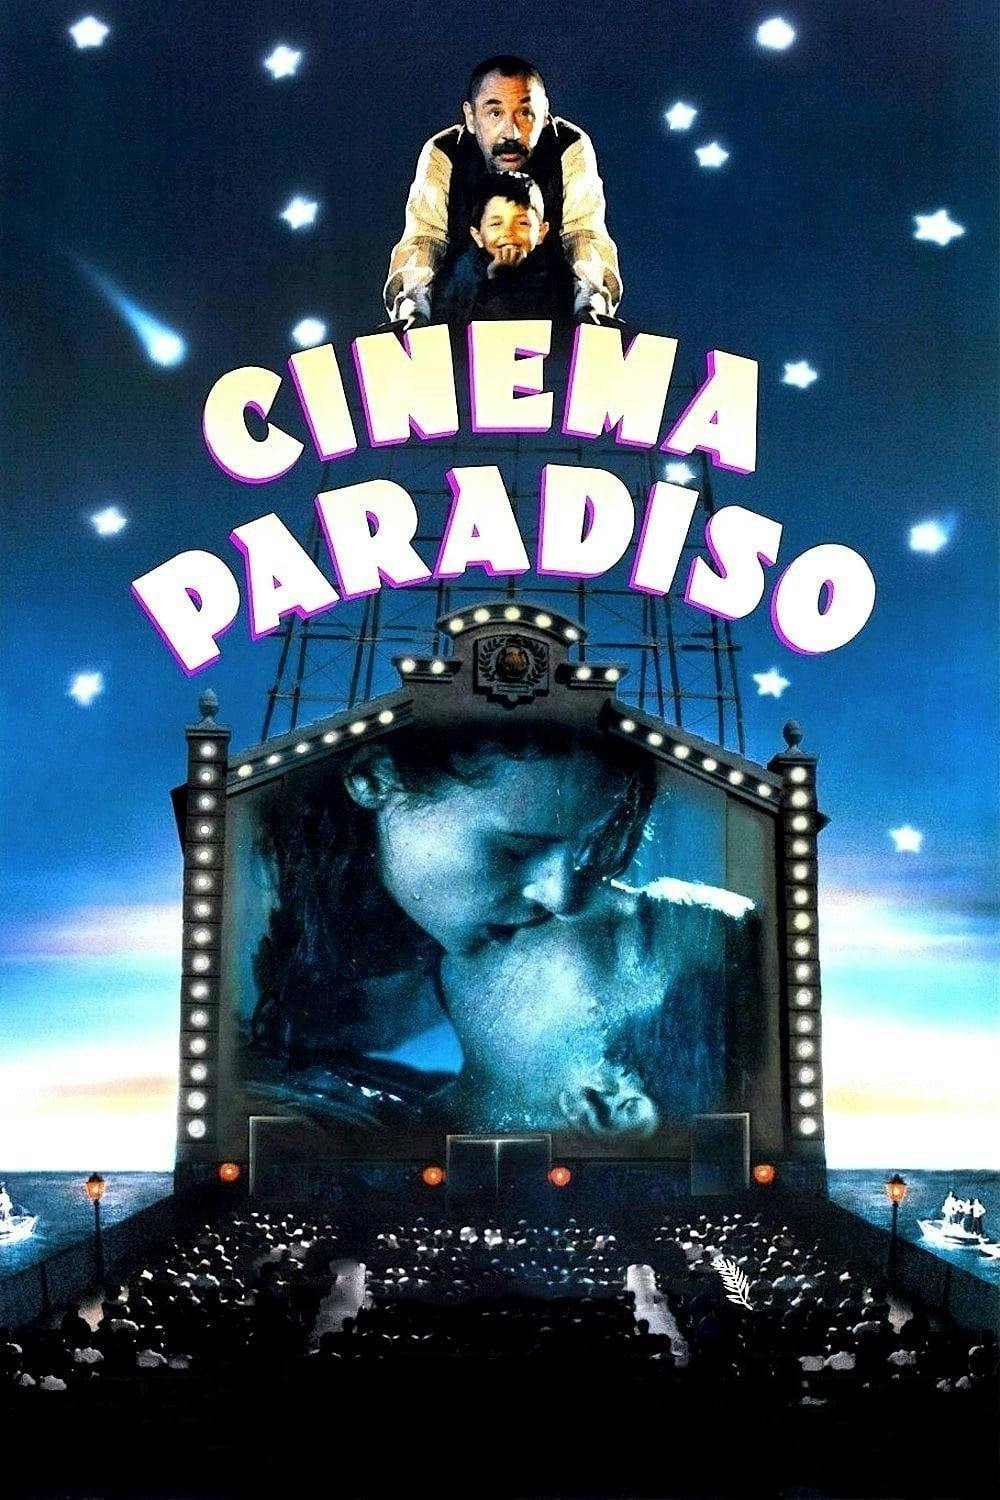 Movie poster of "Cinema Paradiso"